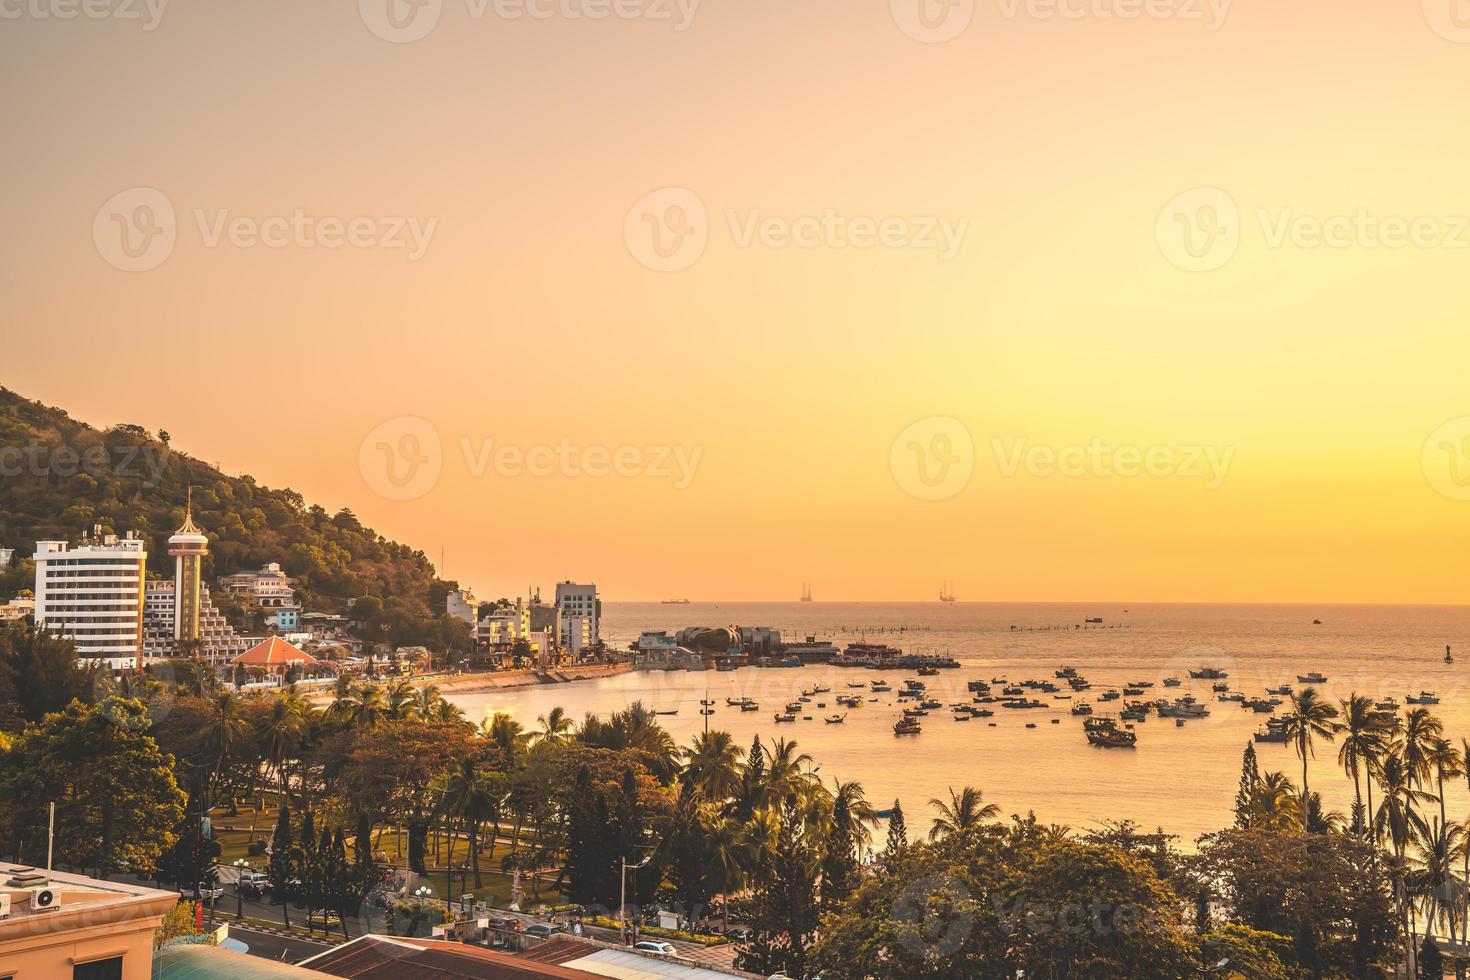 vung tau luchtfoto van de stad met prachtige zonsondergang en zoveel boten. panoramisch uitzicht op de kust van vung tau van bovenaf, met golven, kustlijn, straten, kokospalmen en tao phung-berg in vietnam. foto